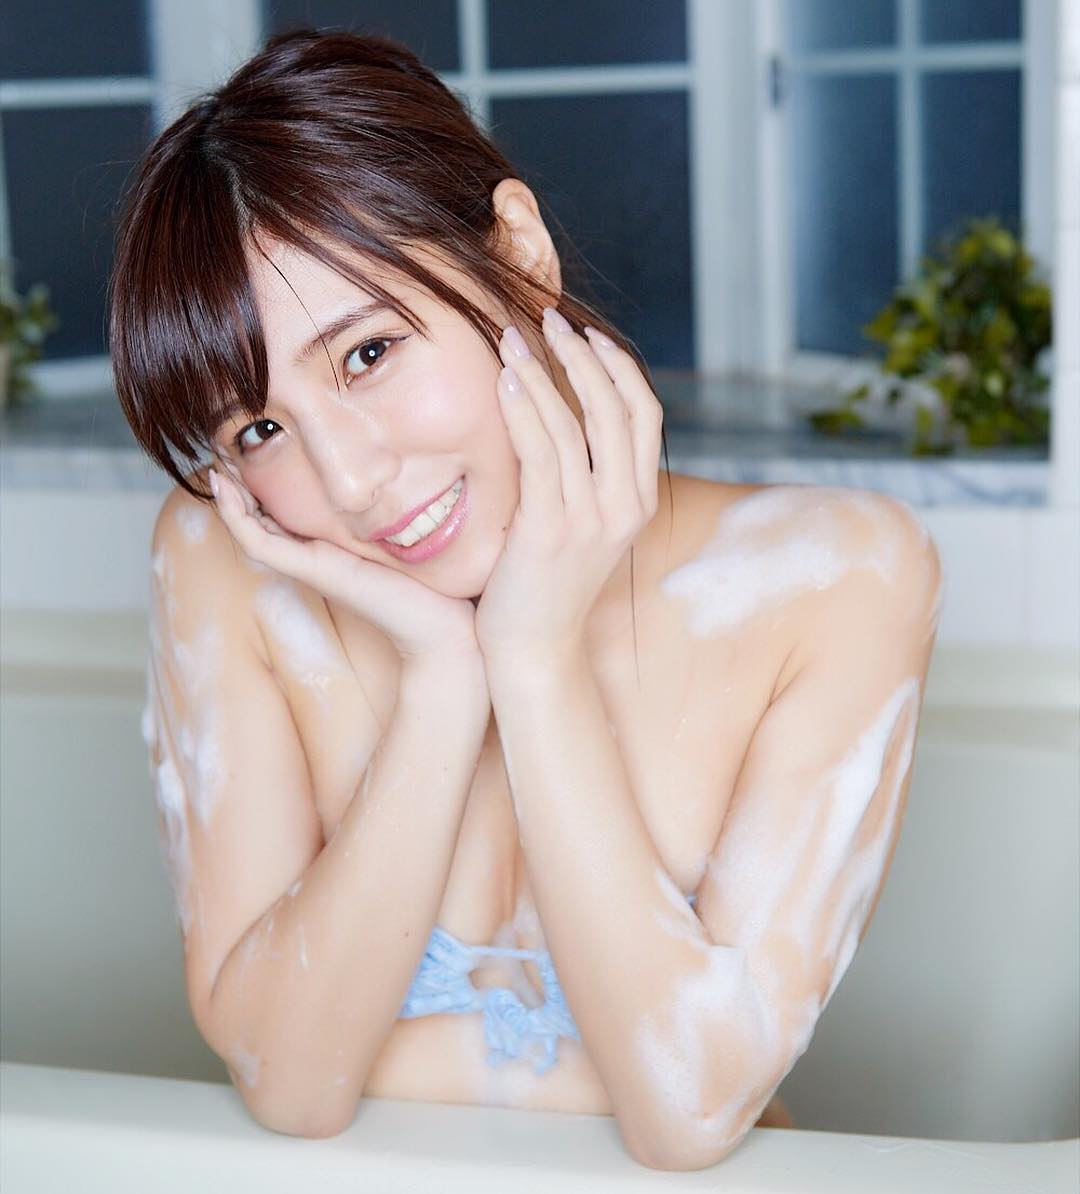 Natsumoto Asami in Pastel Blue Bikini in the Bathtub